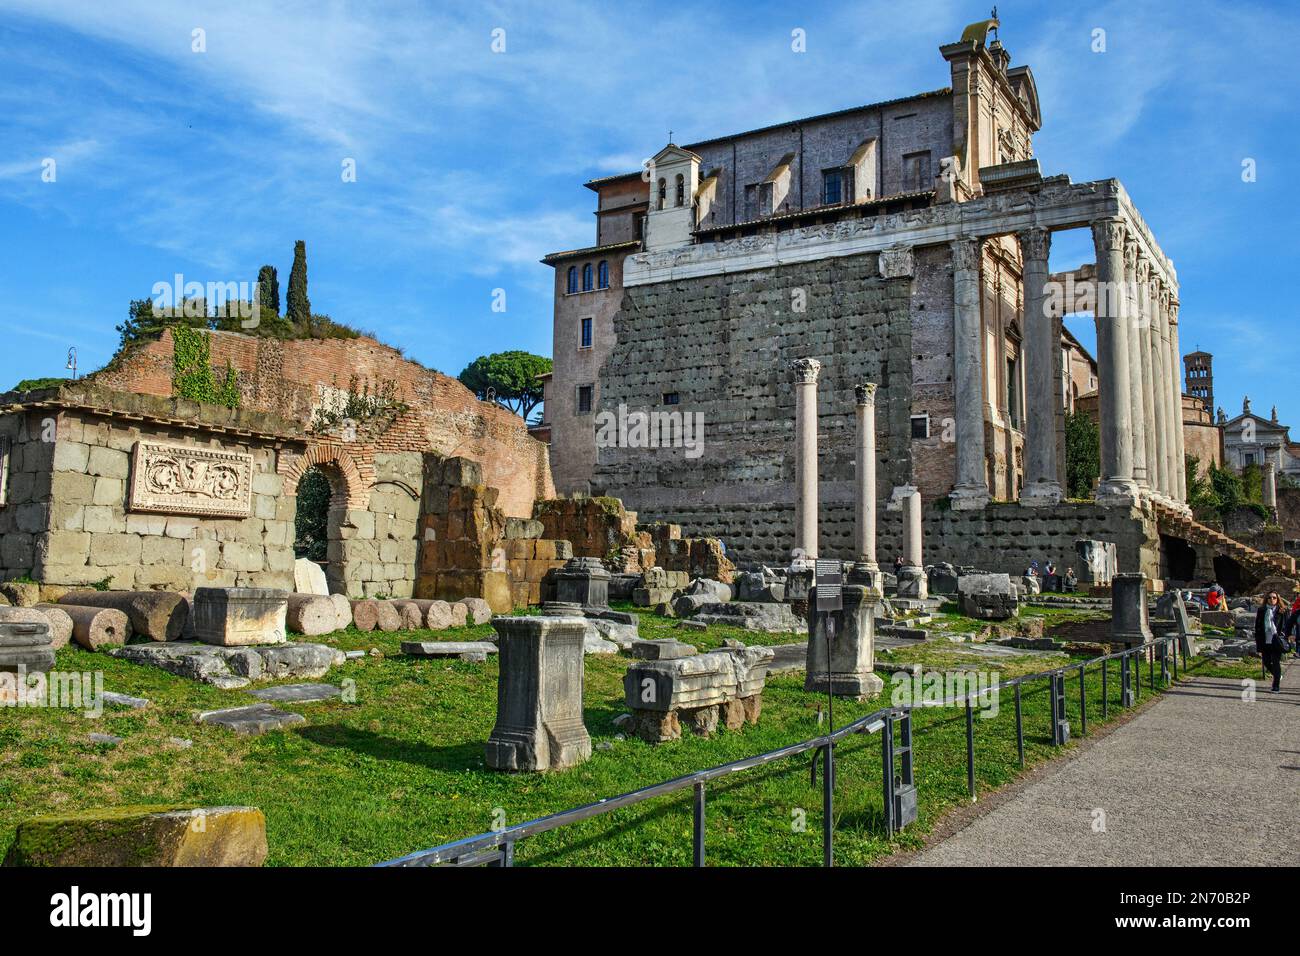 Blick auf Tempel von Pius Faustina auf Forum Romanum, im Vordergrund Links Rugen von Baslica Aemilia, Rom, Lazio, Italien, Europa Foto Stock